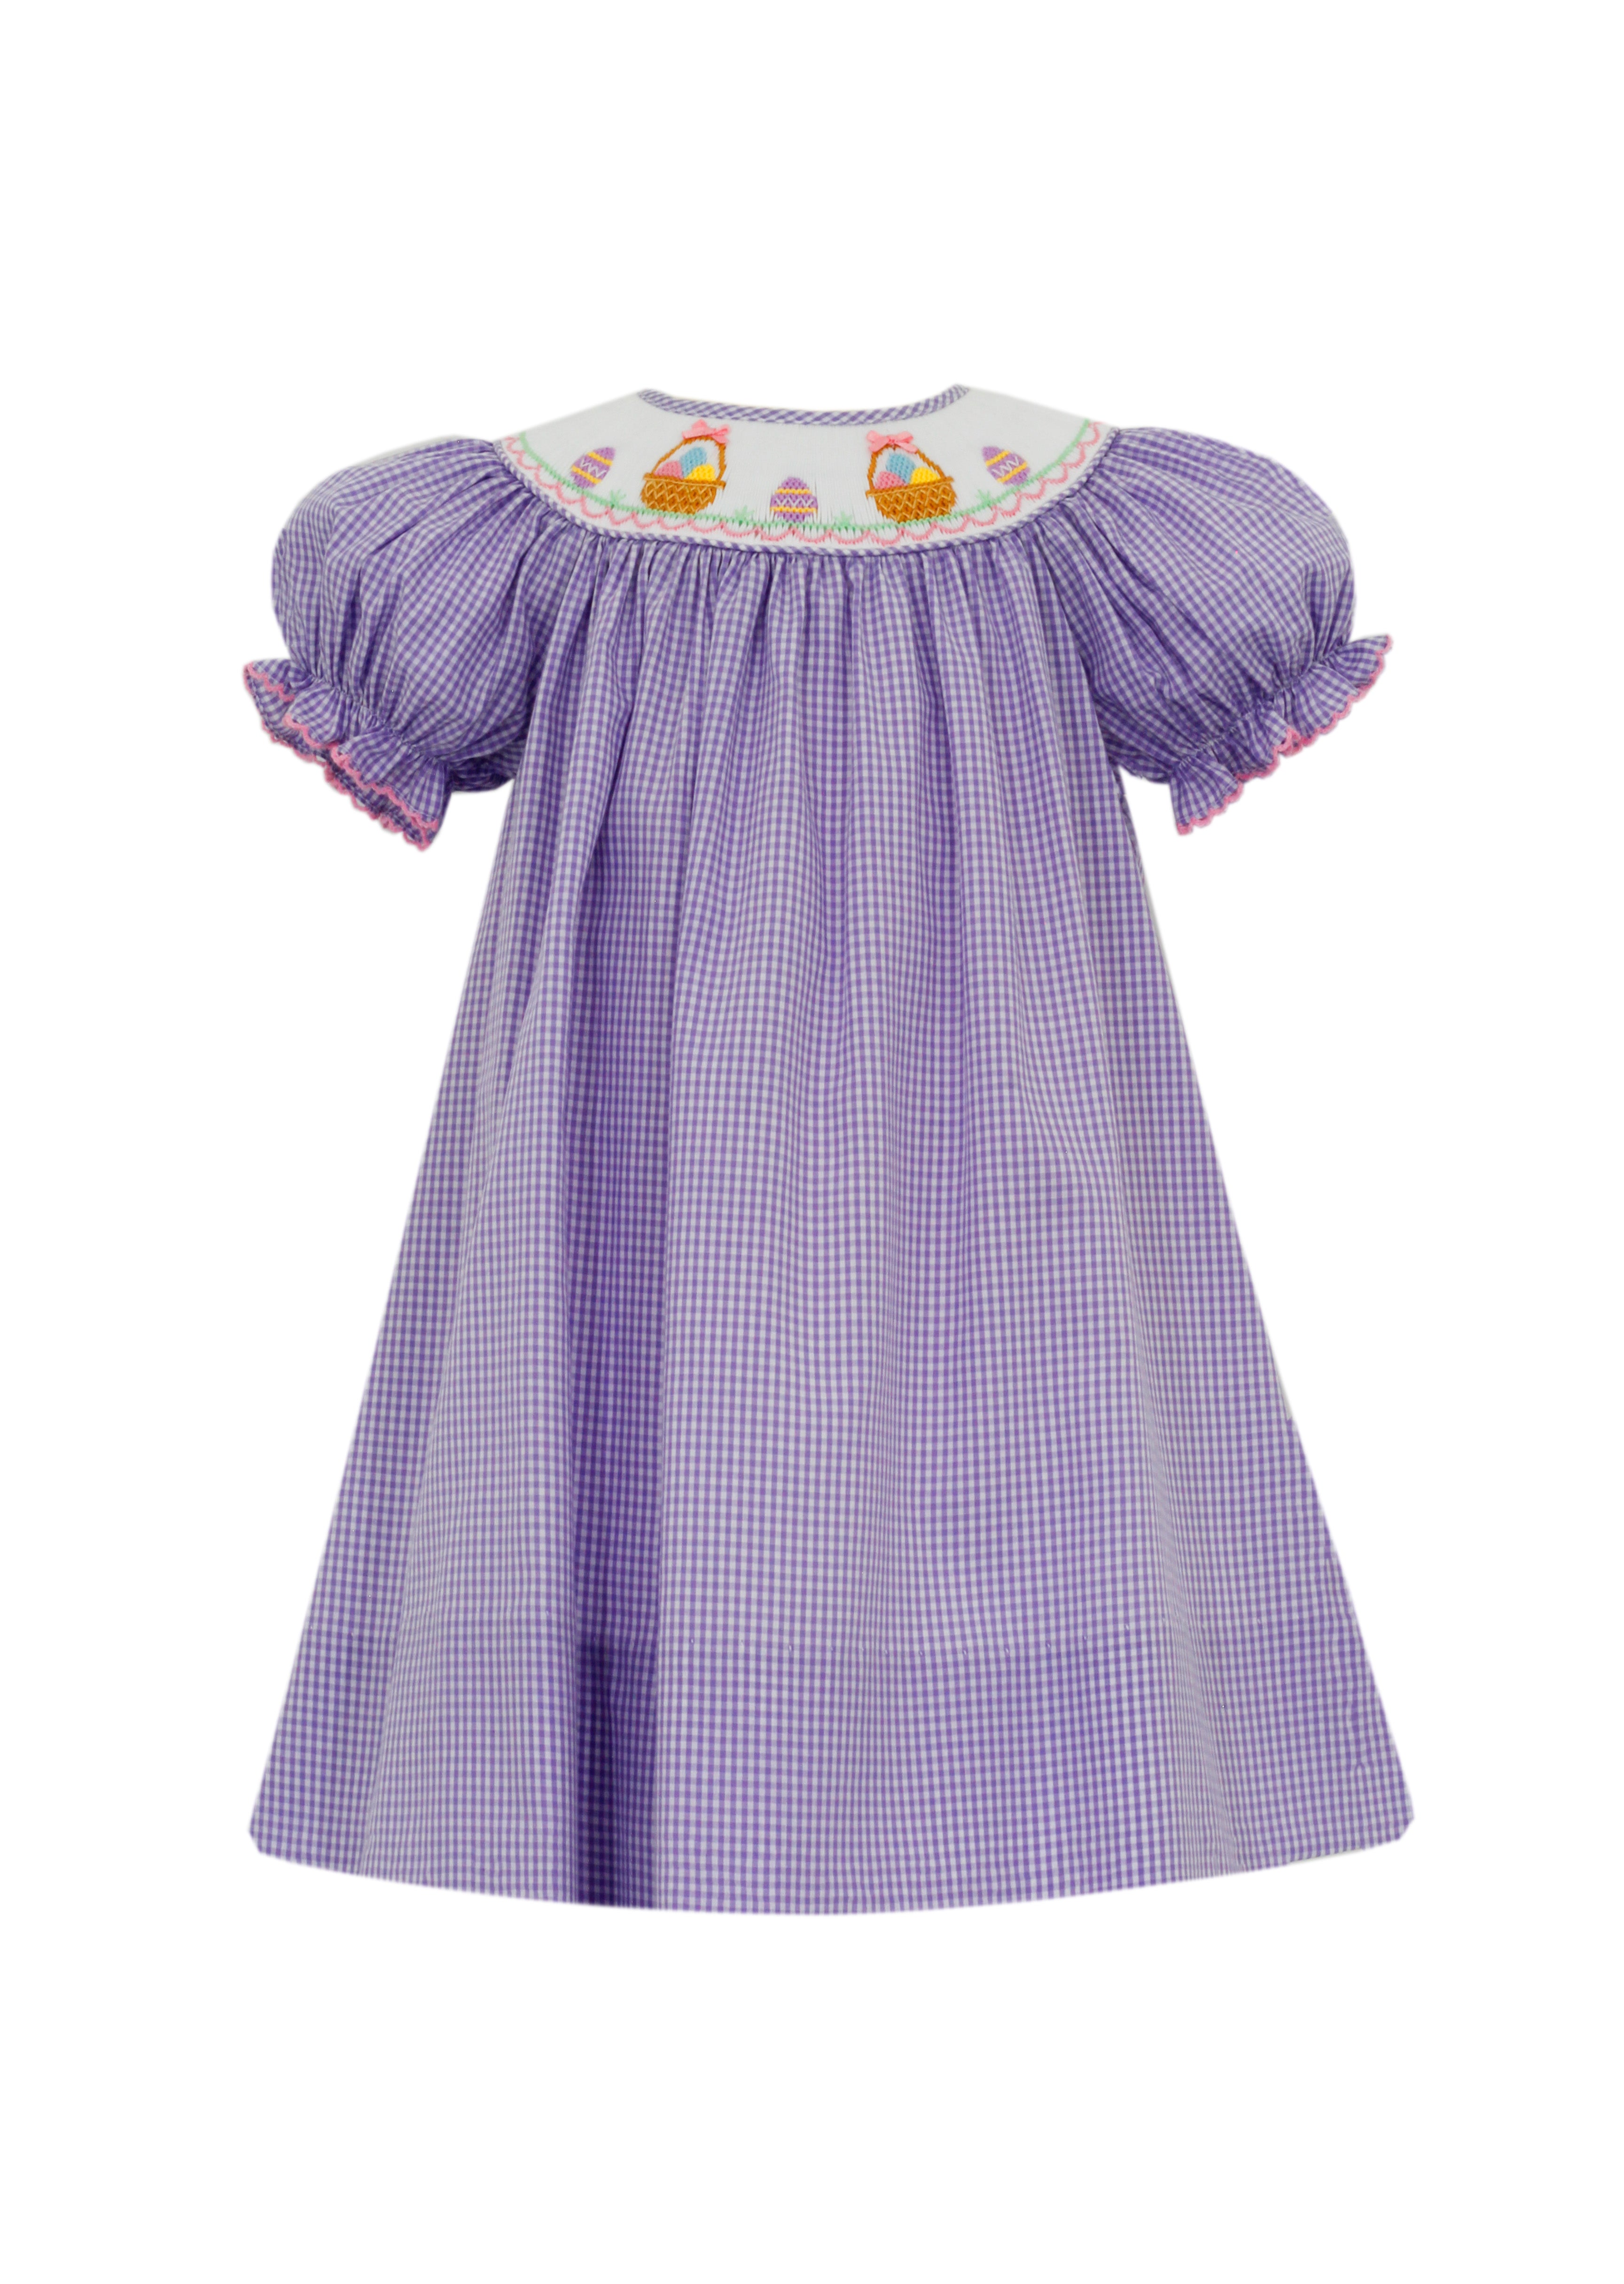 Lilac Gingham Smocked Easter Baskets Bishop Dress